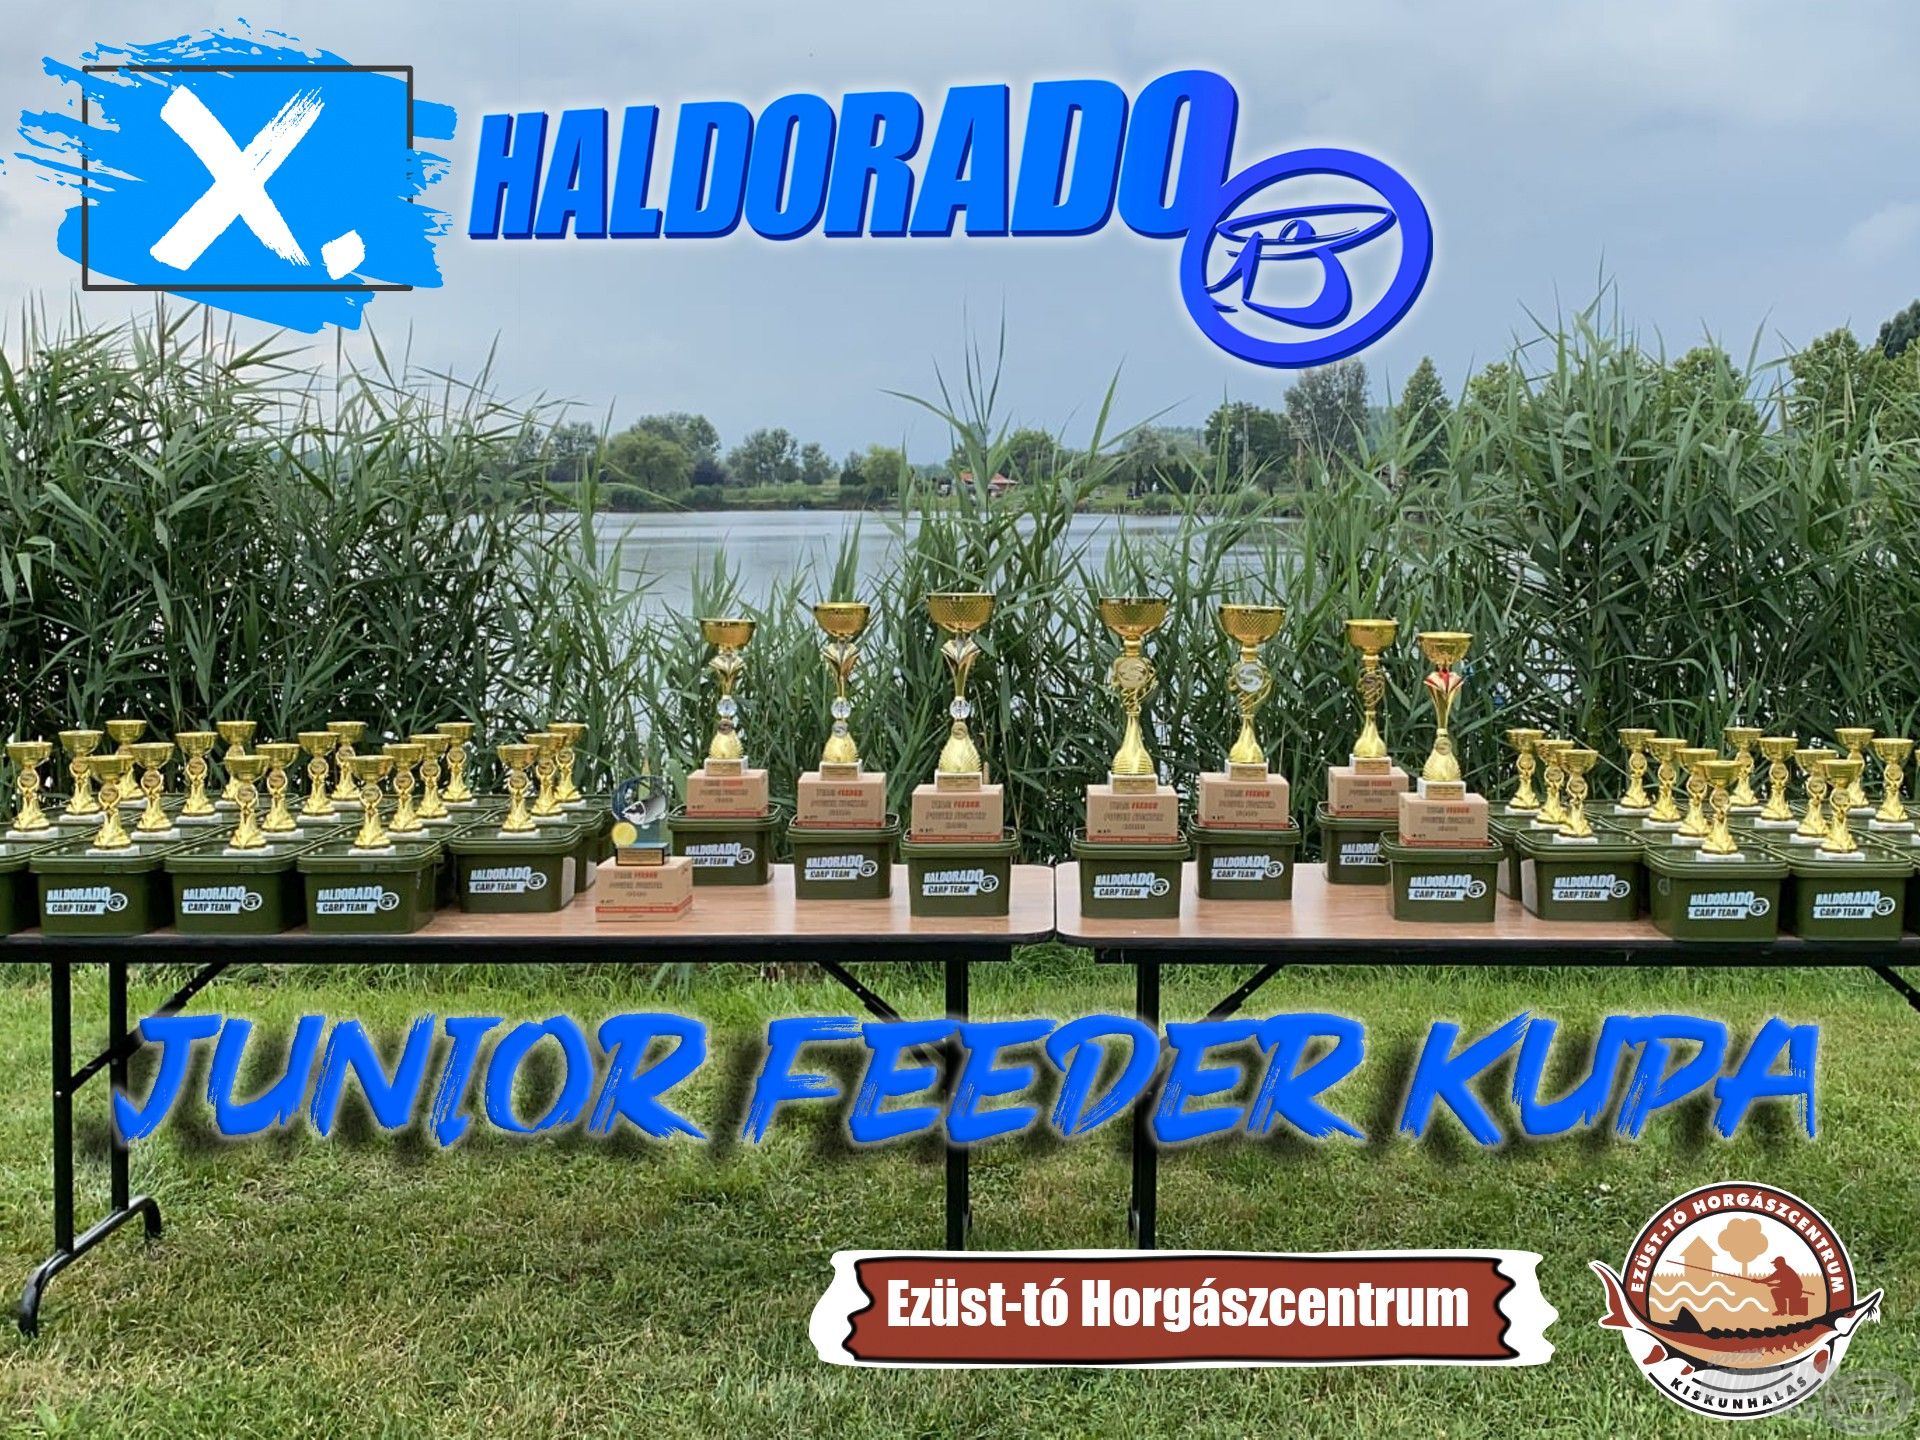 Találkozzunk a X. Haldorádó Junior Feeder Kupán!